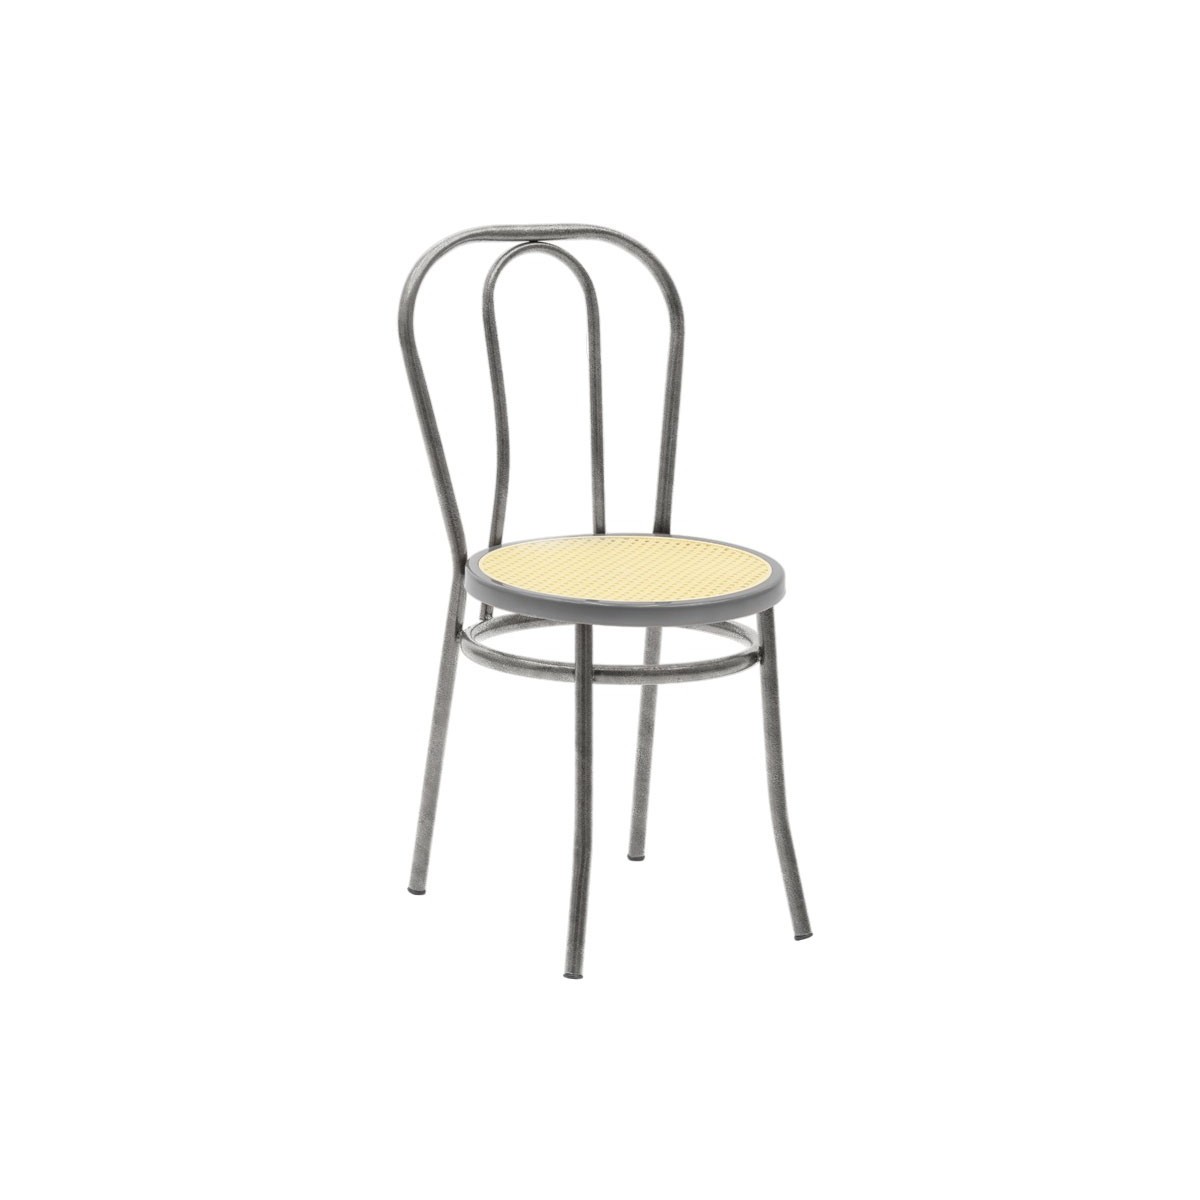 Καρέκλα "WIEN" από μέταλλο/σχοινί σε γκρι/μπεζ χρώμα 40x47x85